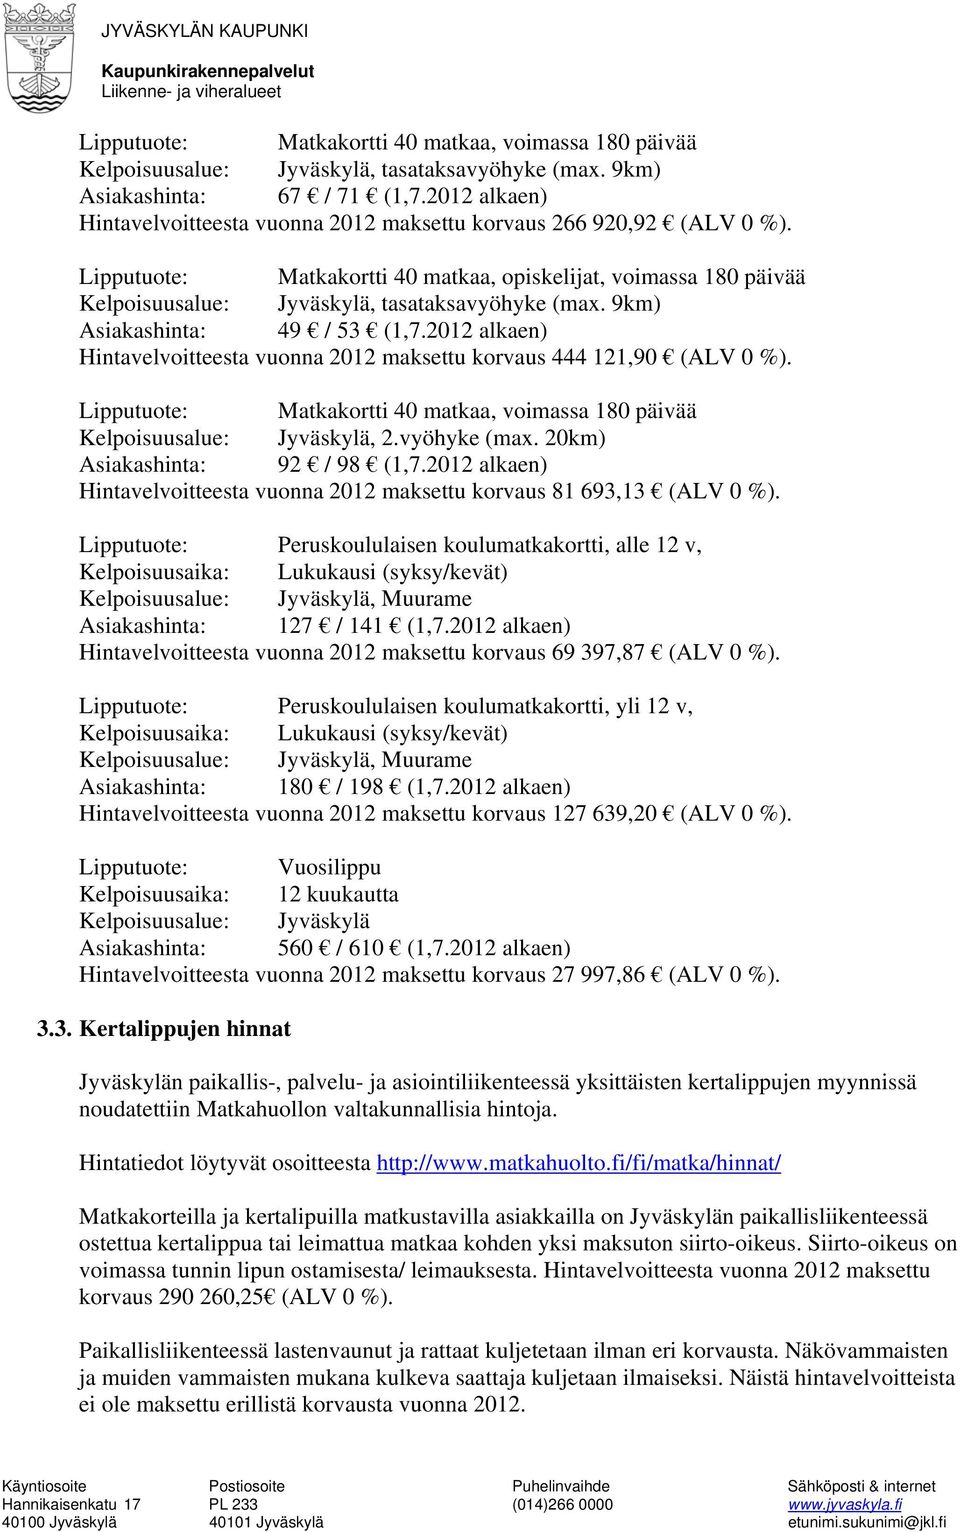 9km) Asiakashinta: 49 / 53 (1,7.2012 alkaen) Hintavelvoitteesta vuonna 2012 maksettu korvaus 444 121,90 (ALV 0 %). Lipputuote: Matkakortti 40 matkaa, voimassa 180 päivää Kelpoisuusalue: Jyväskylä, 2.